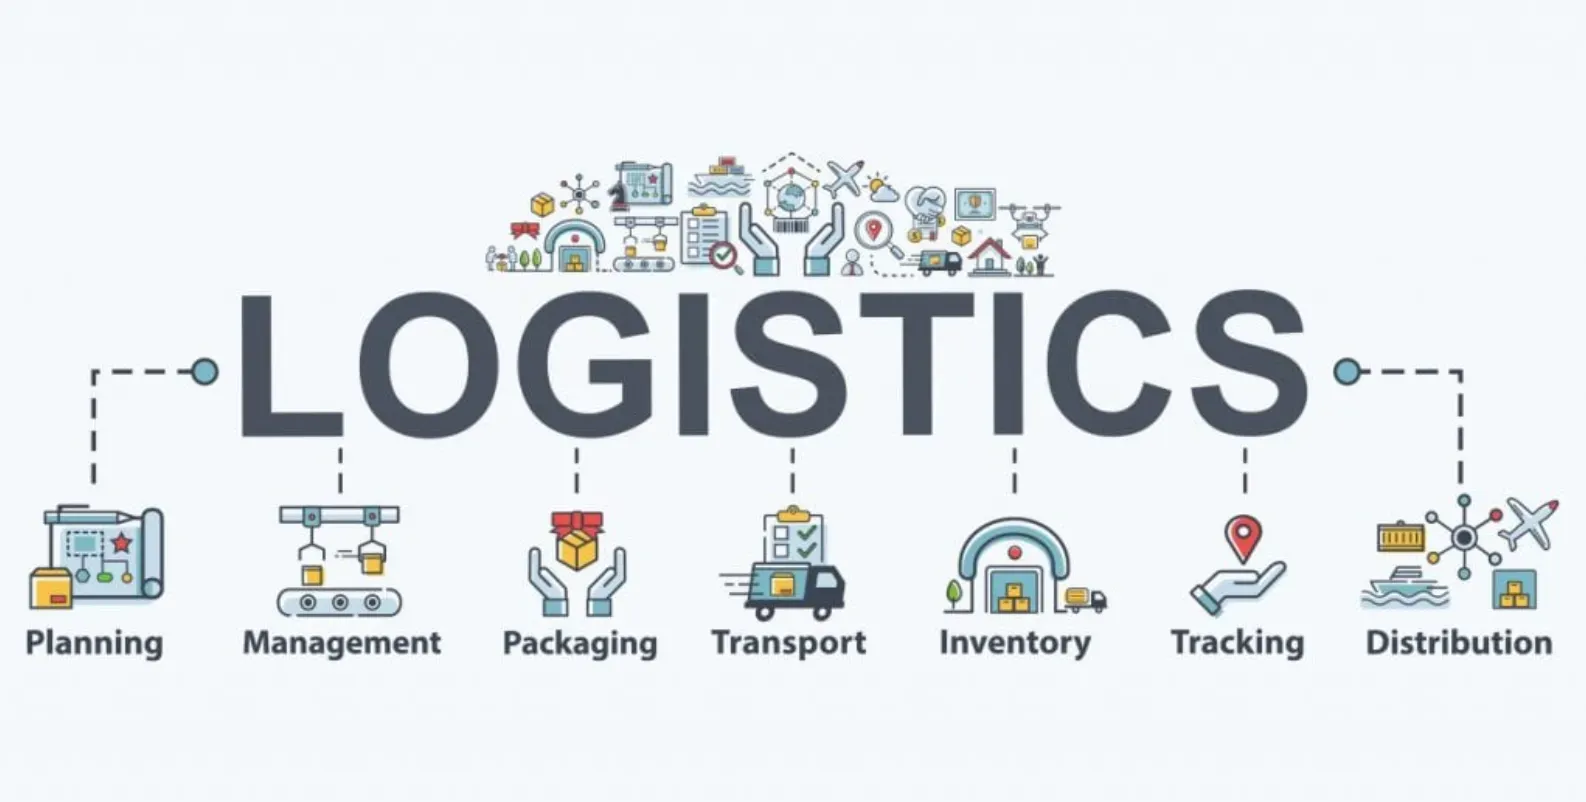 Best Practices for Logistics Management